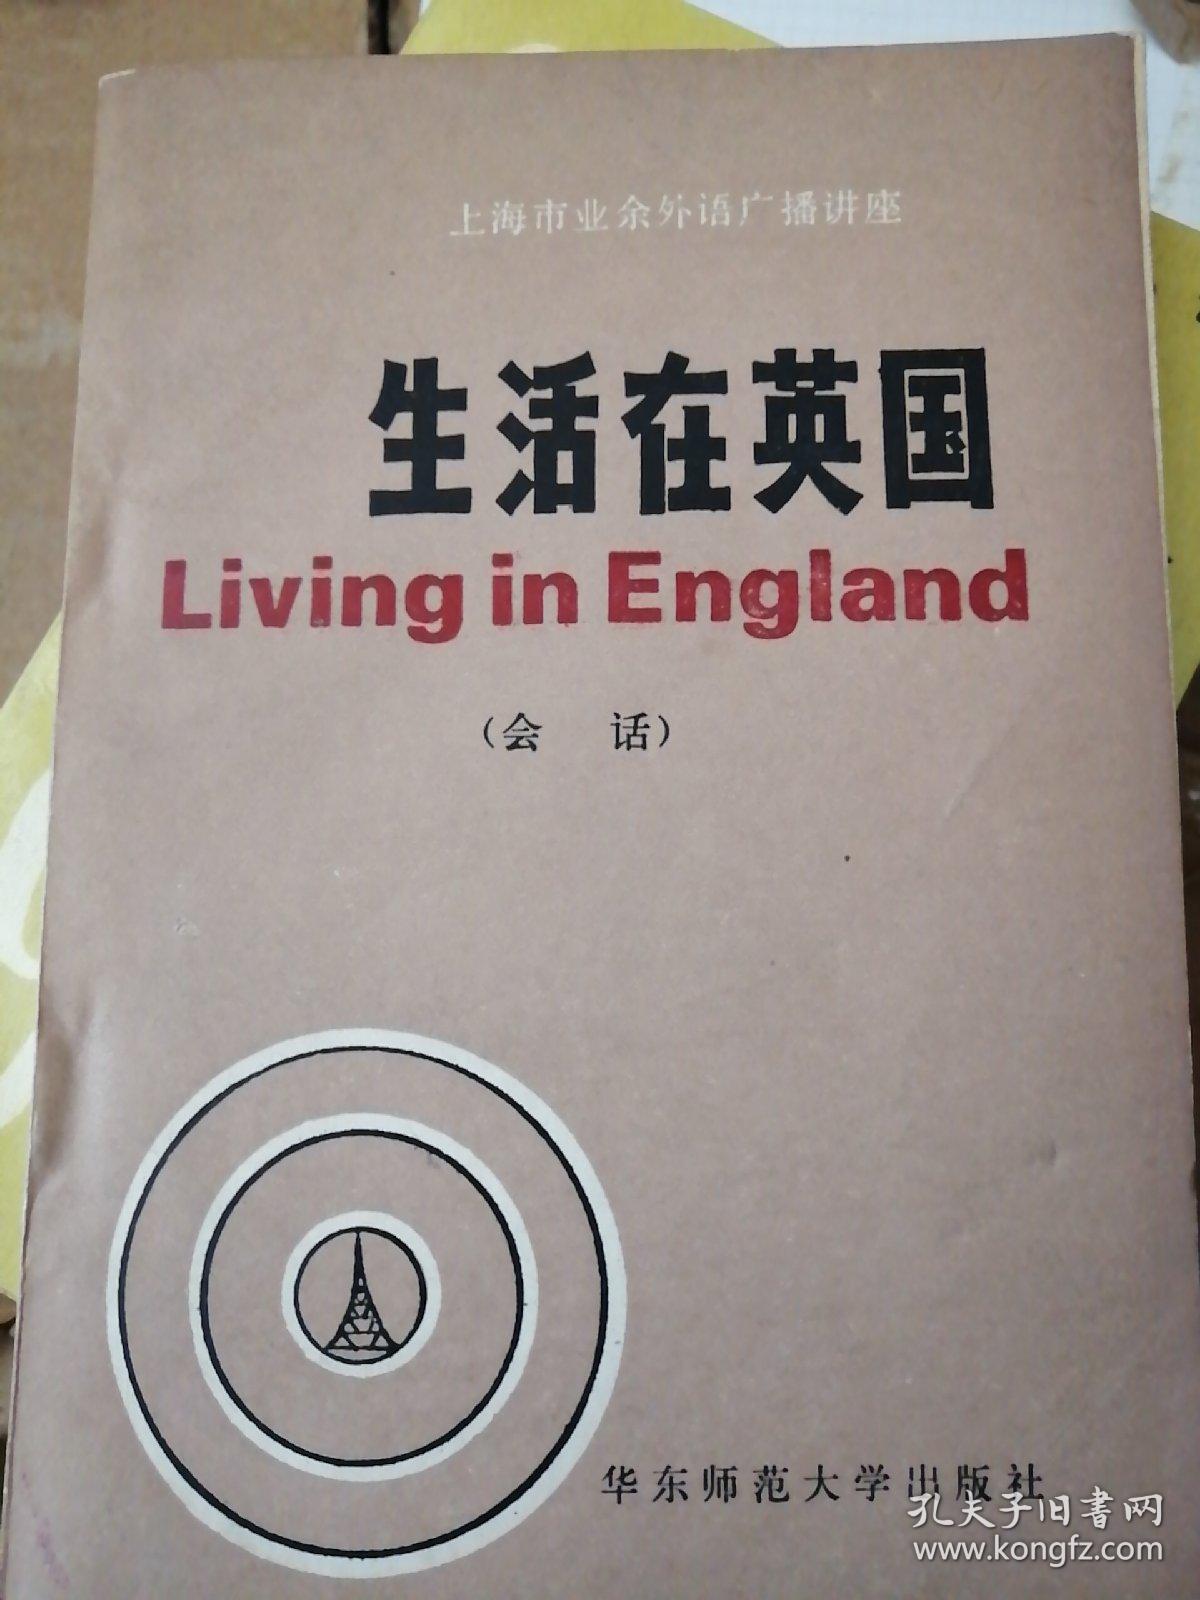 上海市业余外语广播讲座
生活在英国
Living in England
(会话)
华东师范大学出版社